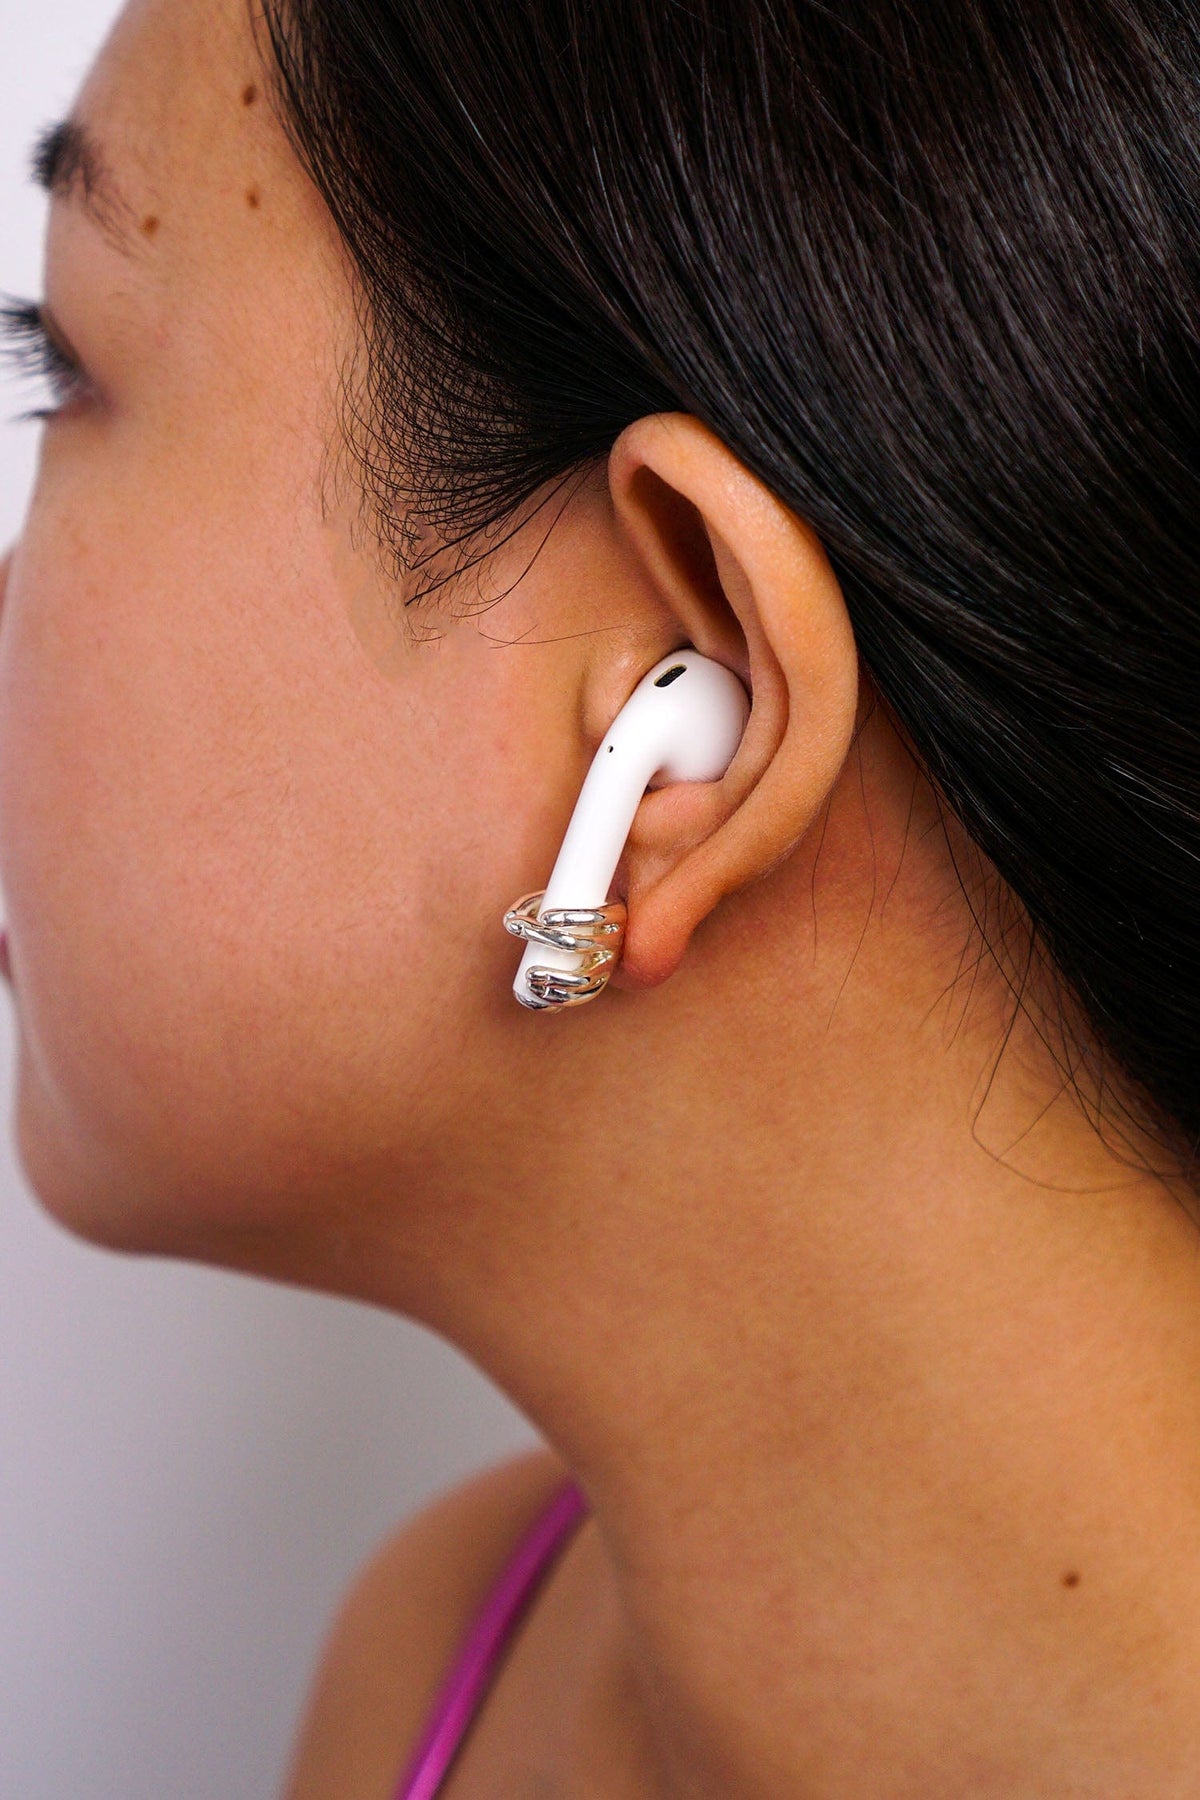 DCD EARRINGS Silver Geometric Hand Stud Earrings